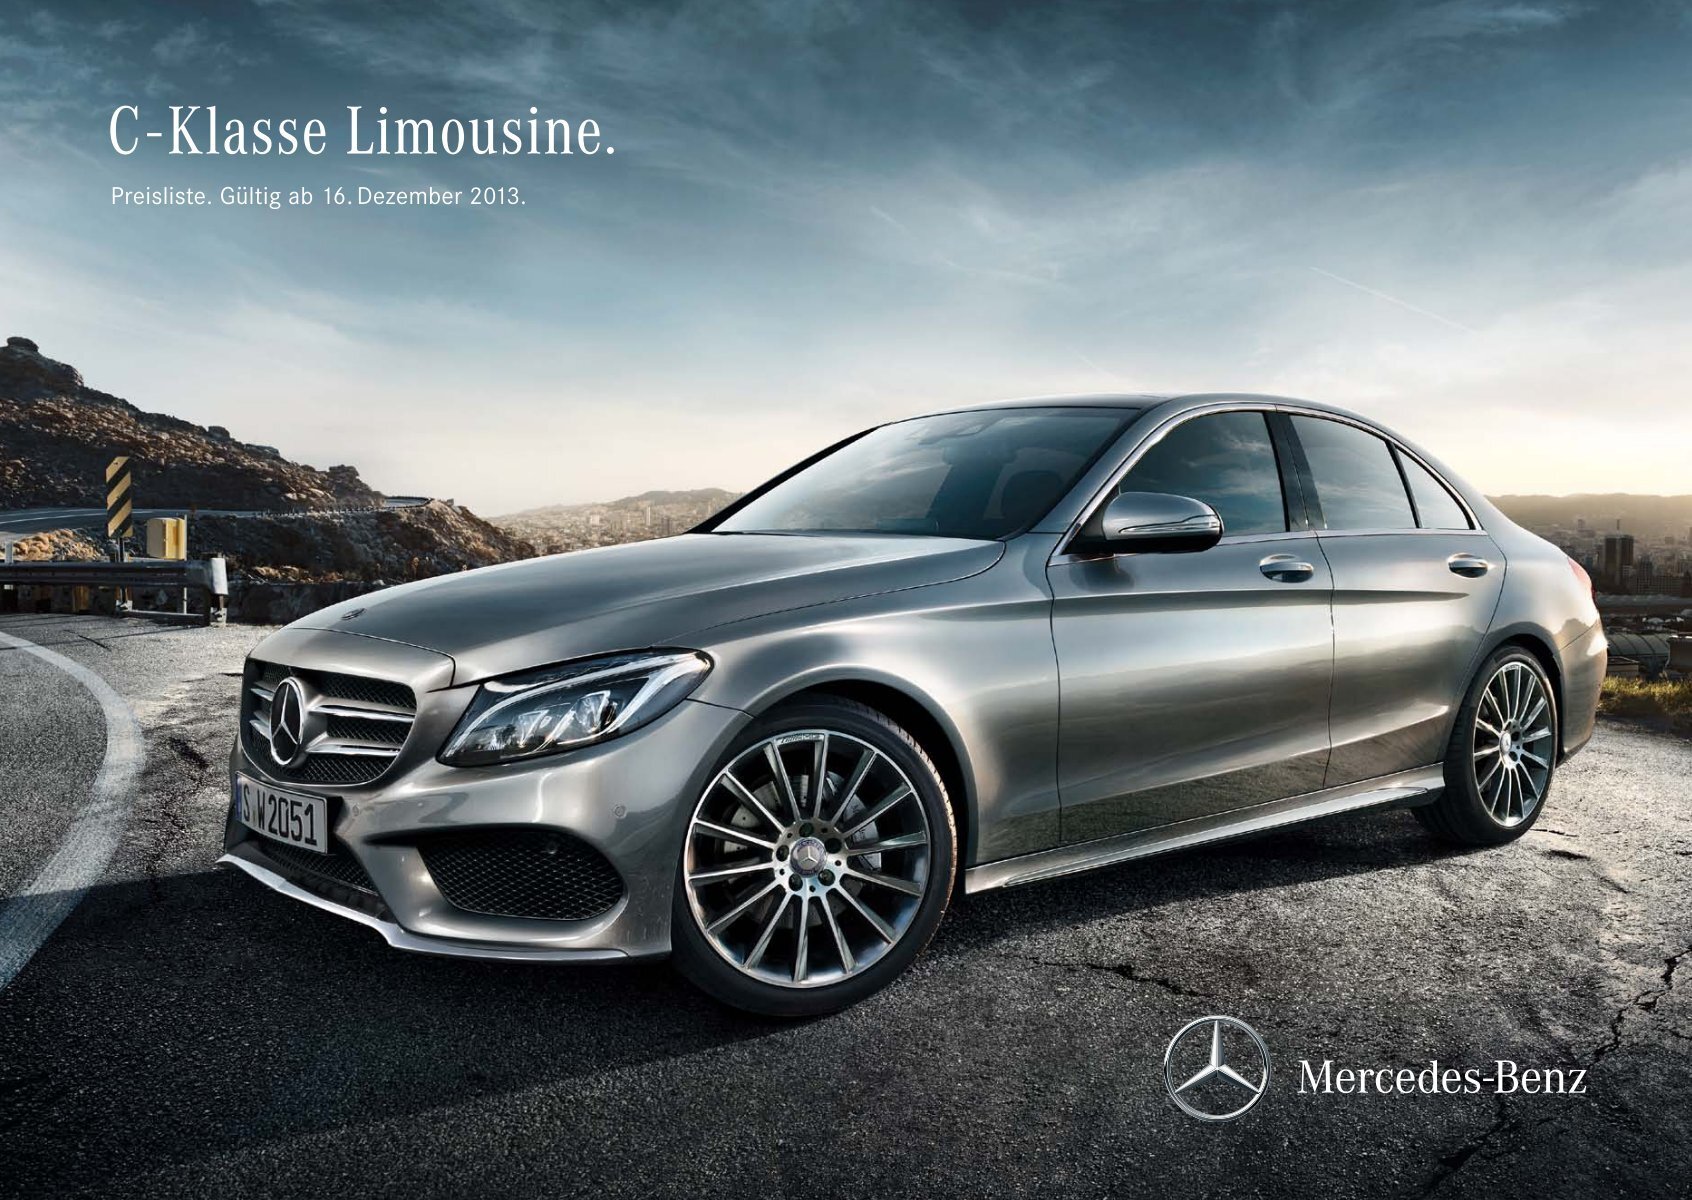 Download Preisliste C-Klasse Limousine - Mercedes-Benz